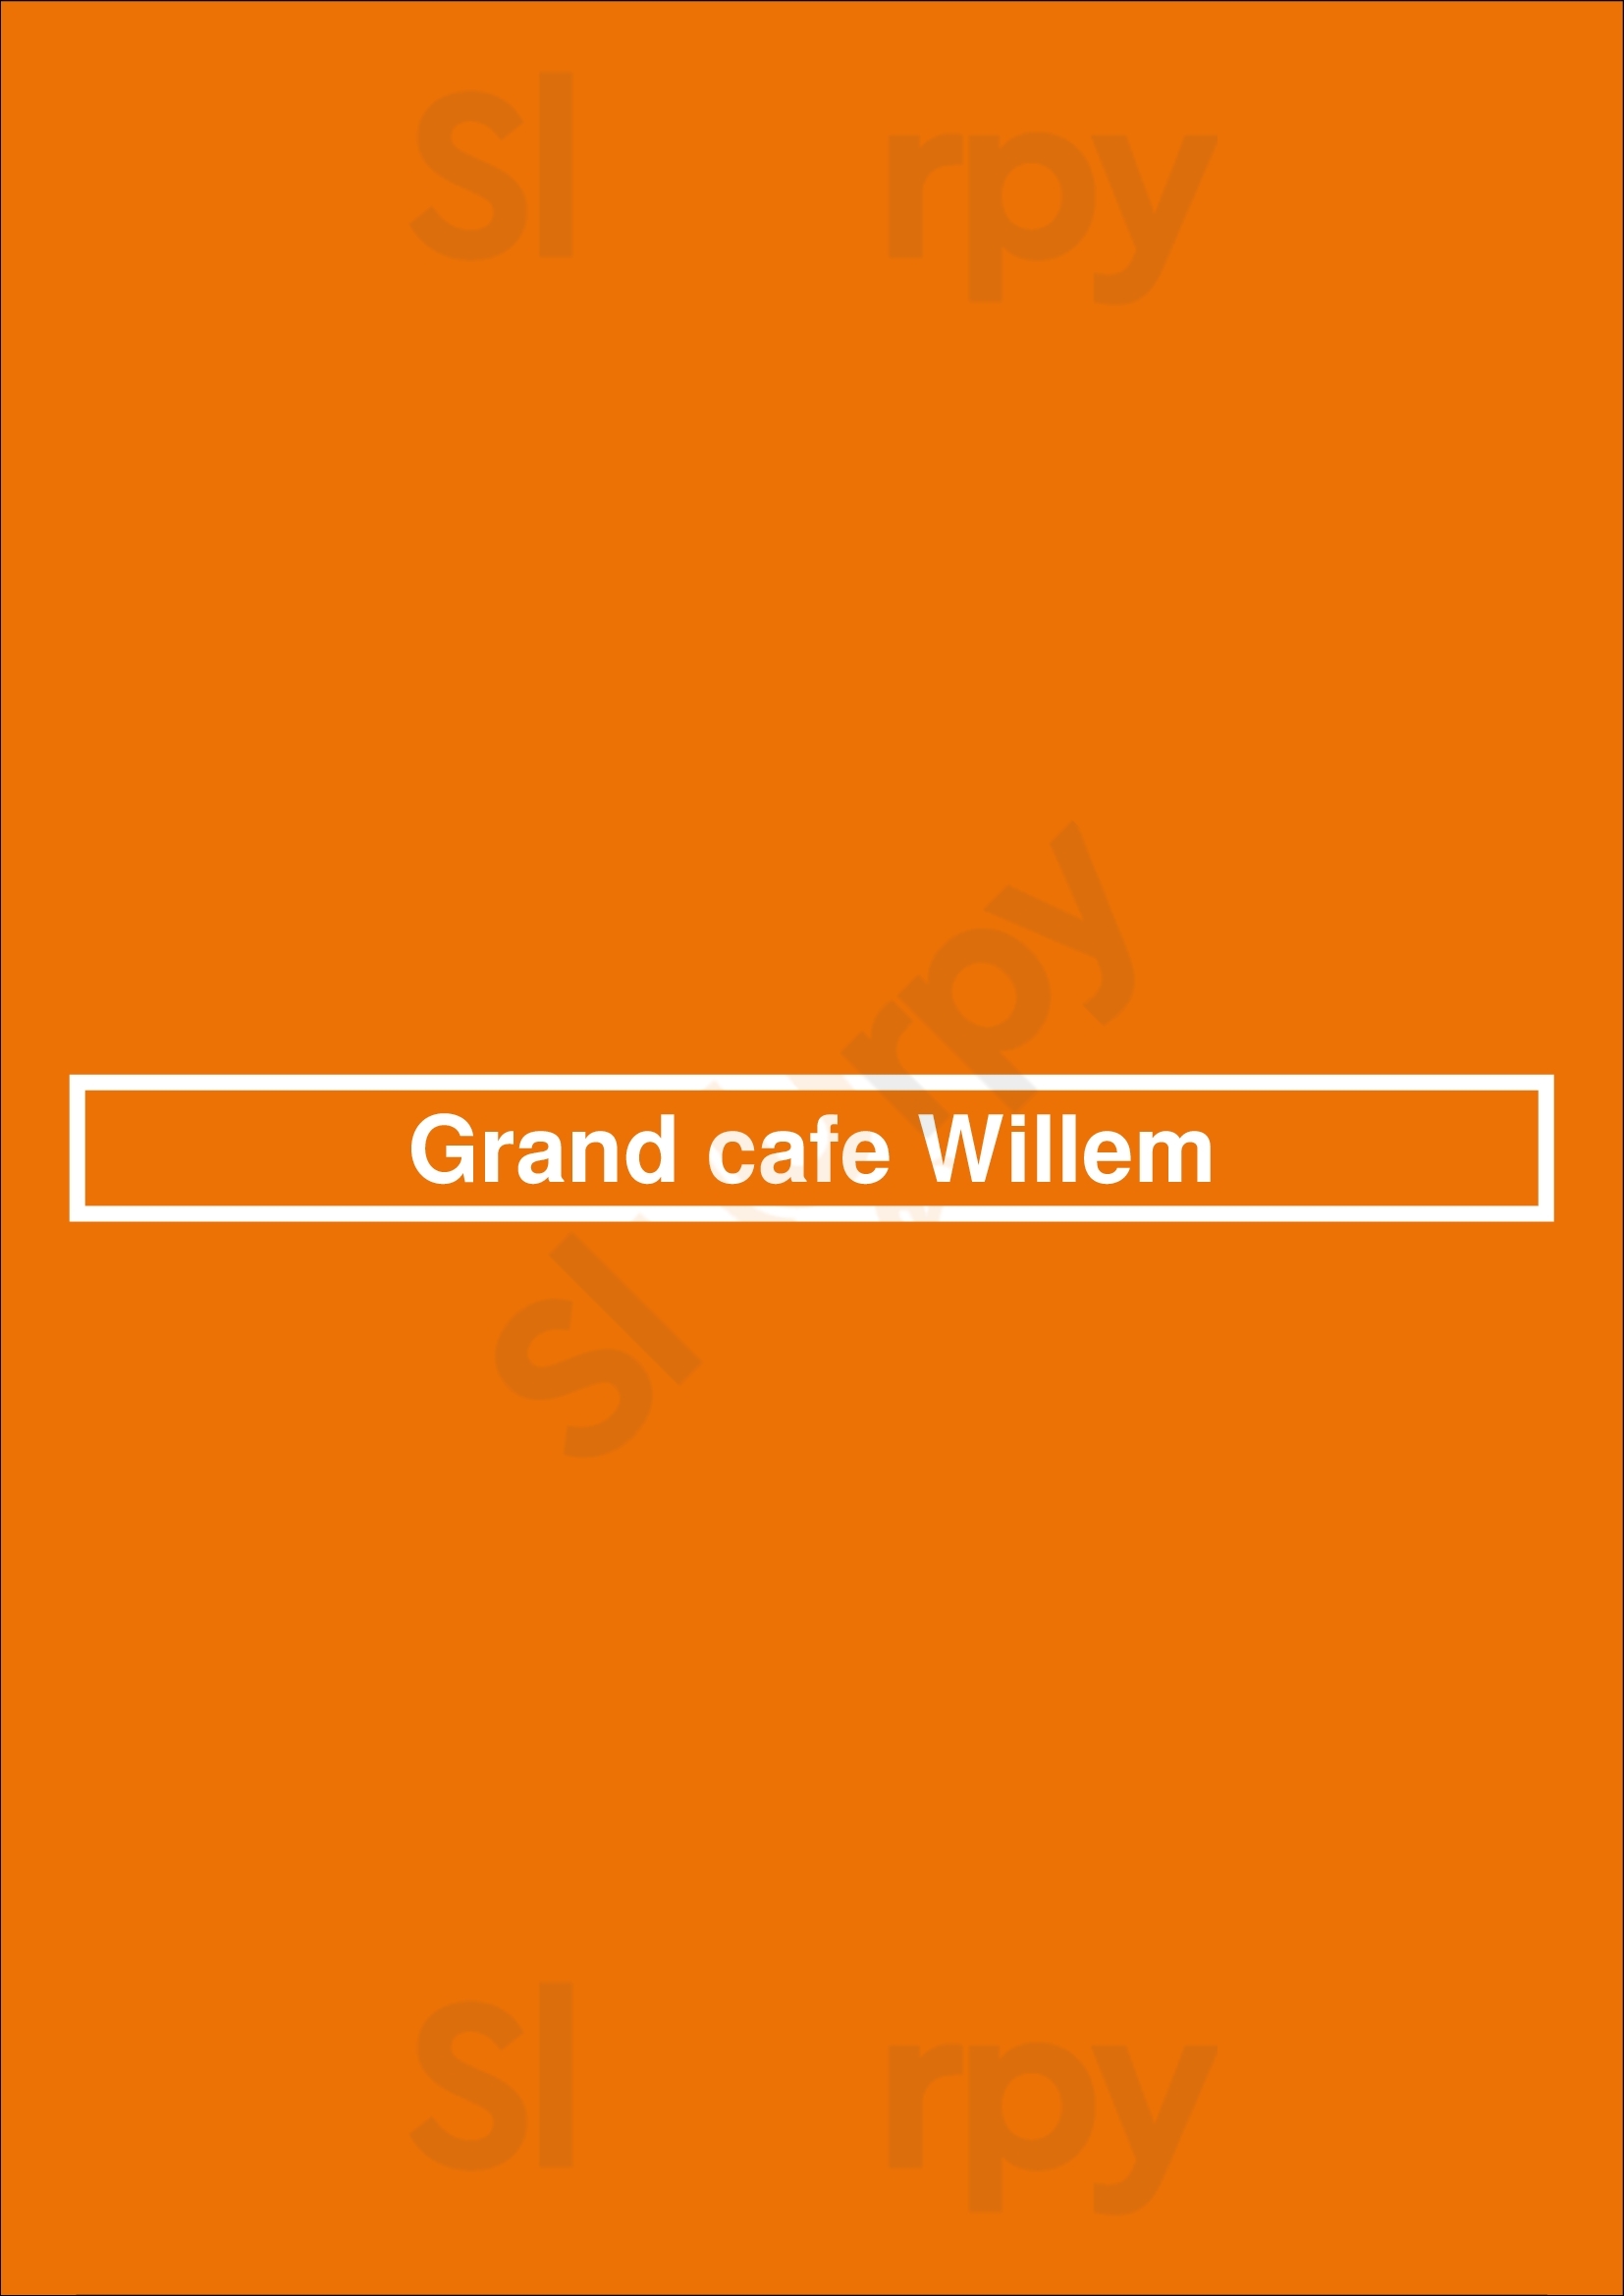 Grand Cafe Willem Middelburg Menu - 1